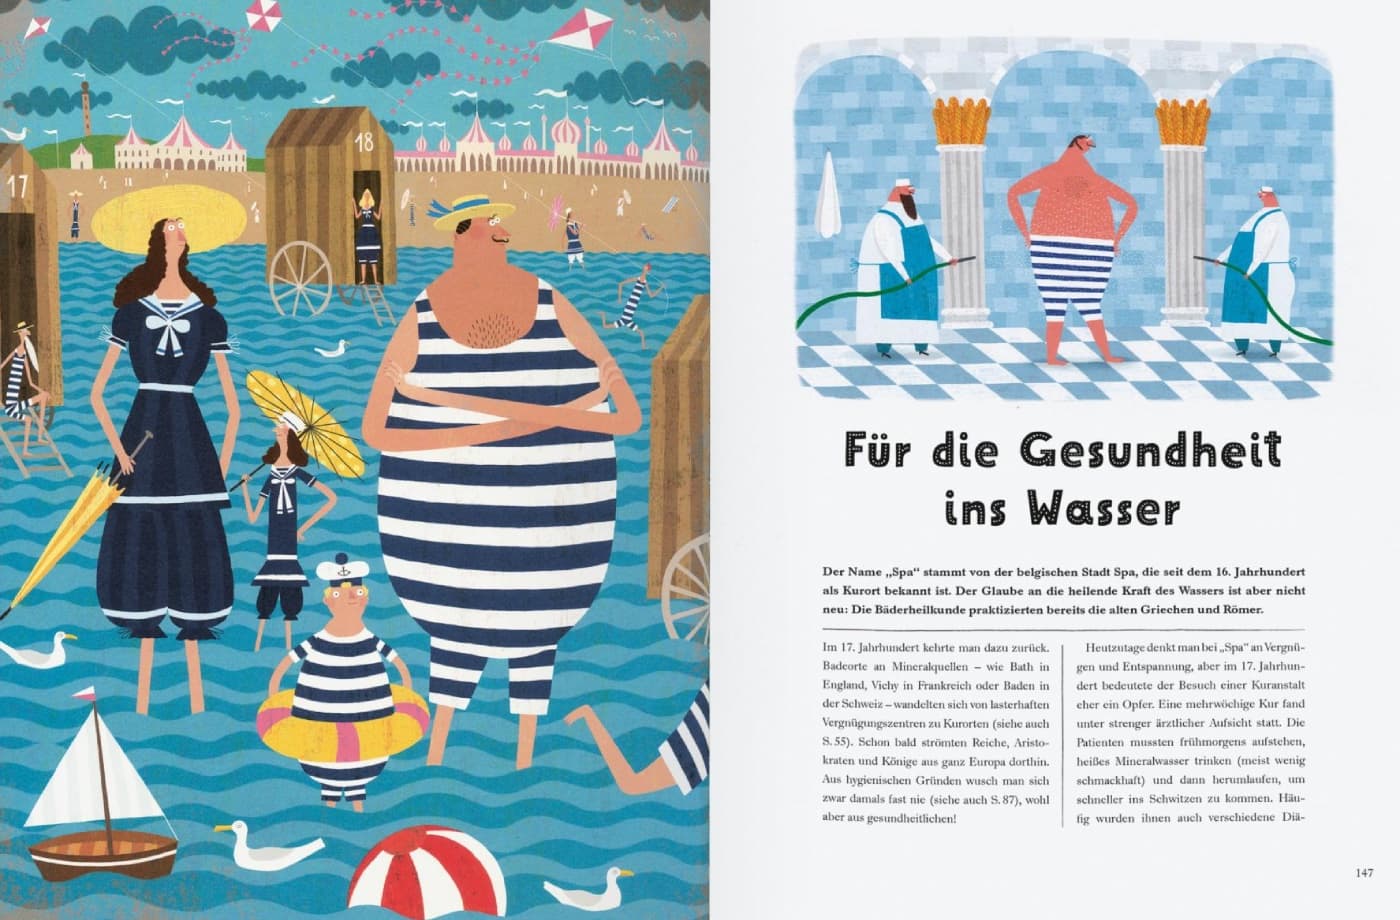 Das Buch vom Dreck: Kindersachbuch: Eine nicht ganz so feine Geschichte von Schmutz, Krankheit und Hygiene // HIMBEER